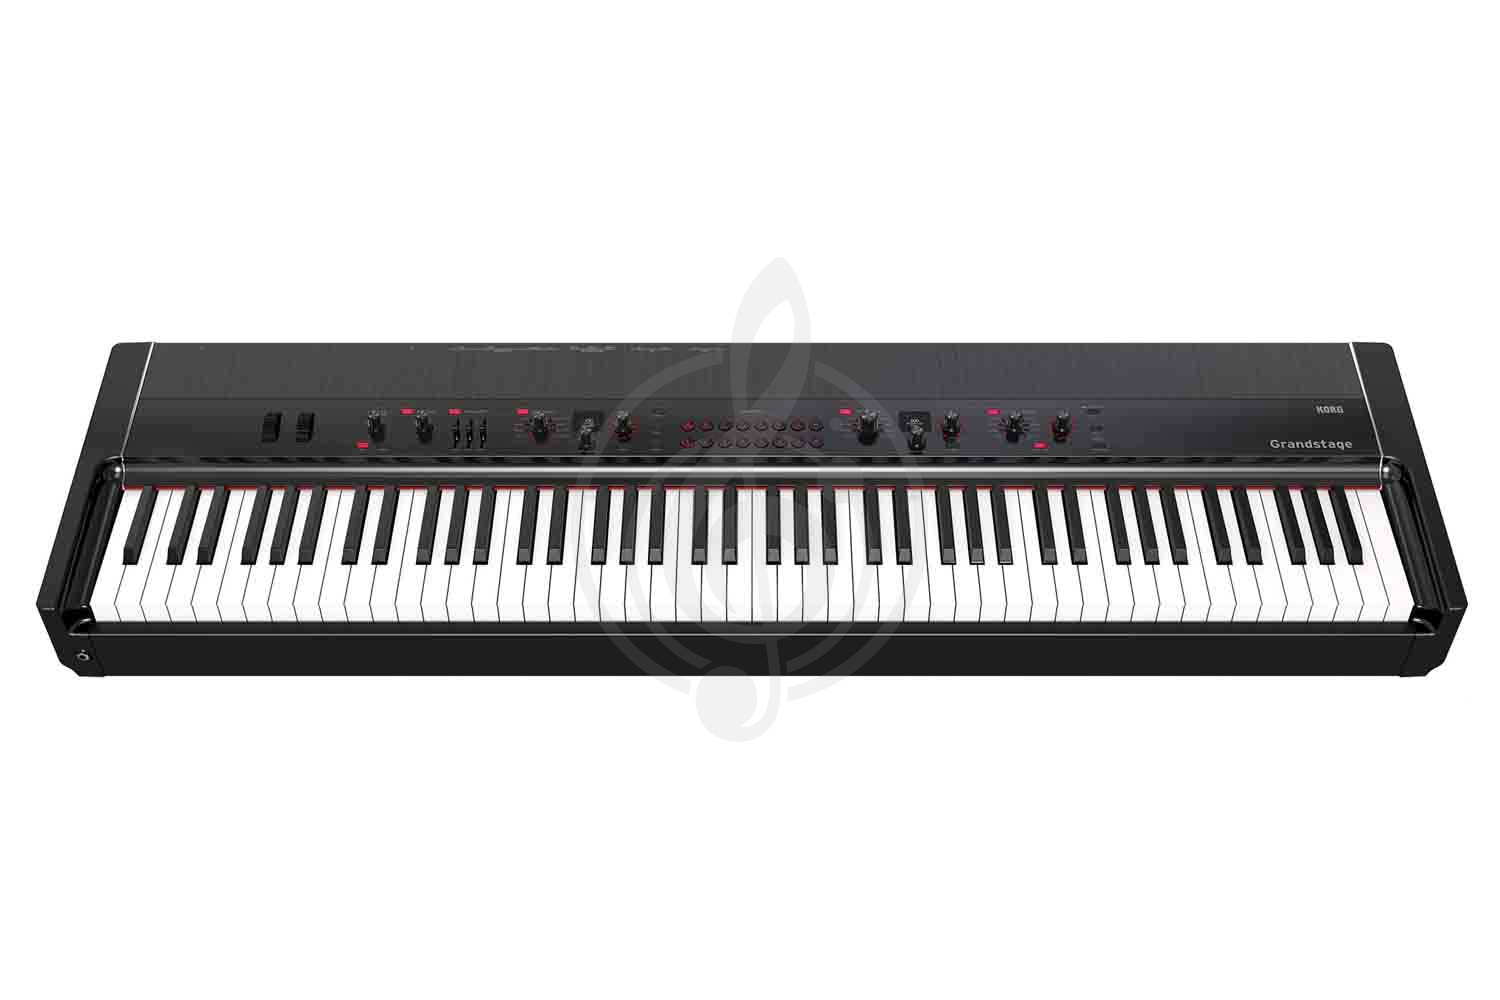 Цифровое пианино Цифровые пианино Korg KORG Grandstage 88 - Цифровое пианино Grandstage 88 - фото 1